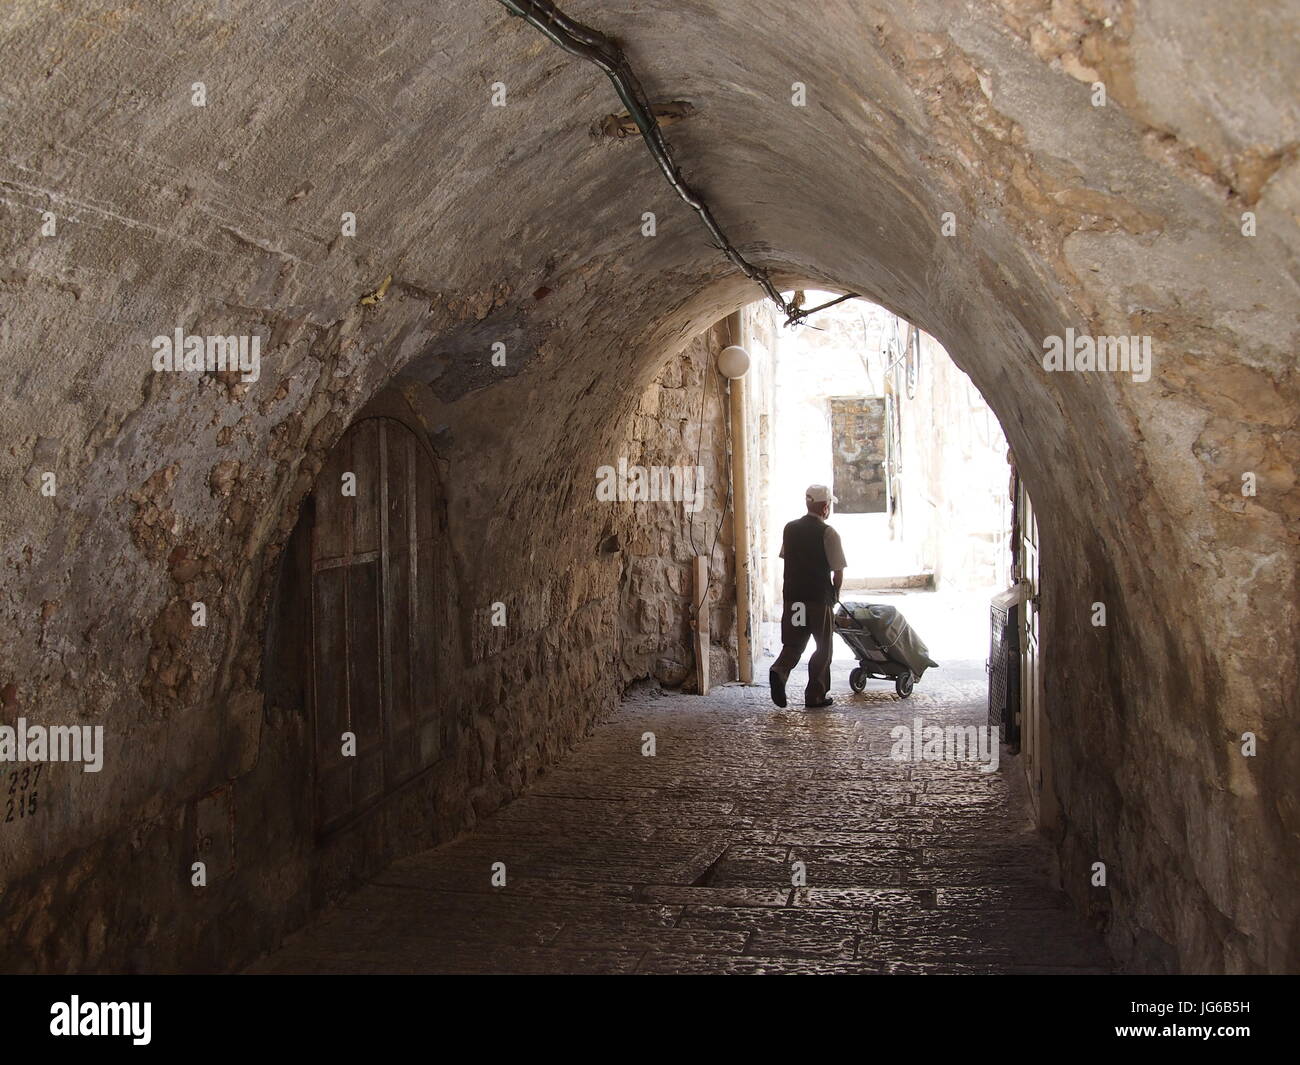 Gerusalemme, Israele - 02 Giugno, 2017: un uomo spinge un carrello della spesa attraverso un tunnel in Gerusalemme atmosferica. Foto Stock